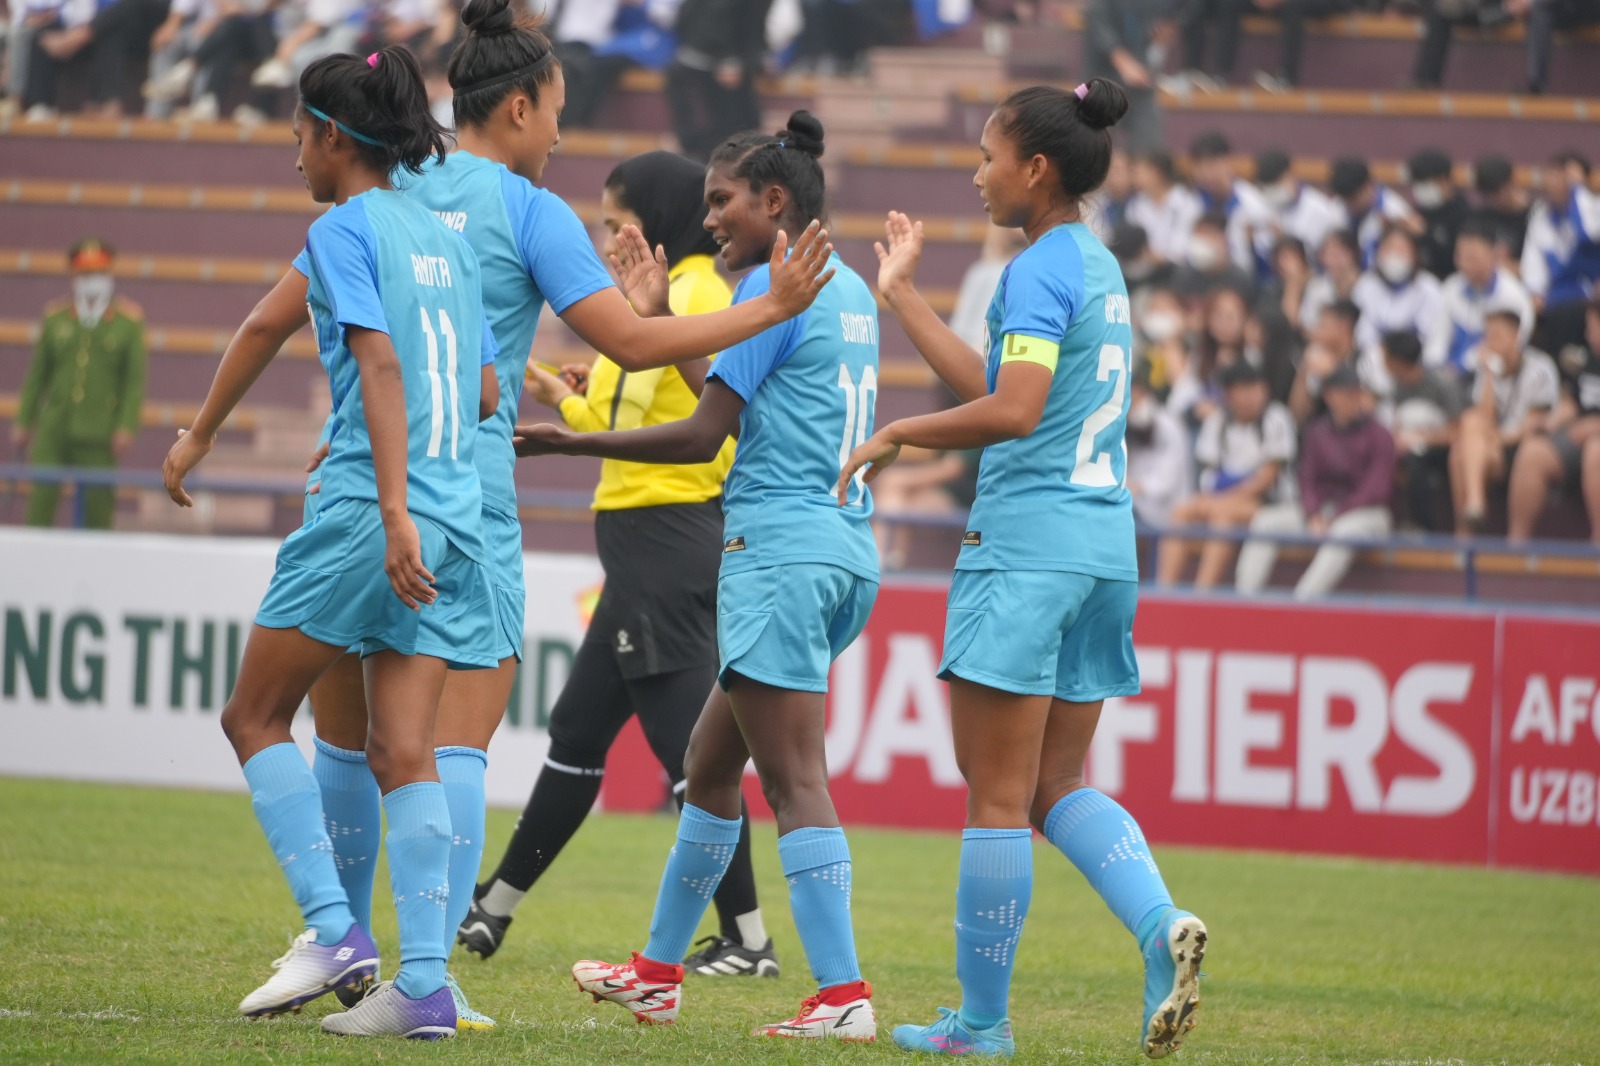 Piala Asia Wanita U20 AFC: NT Wanita India U20 ROUT Singapura 7-0 untuk mencatatkan POIN PENUH